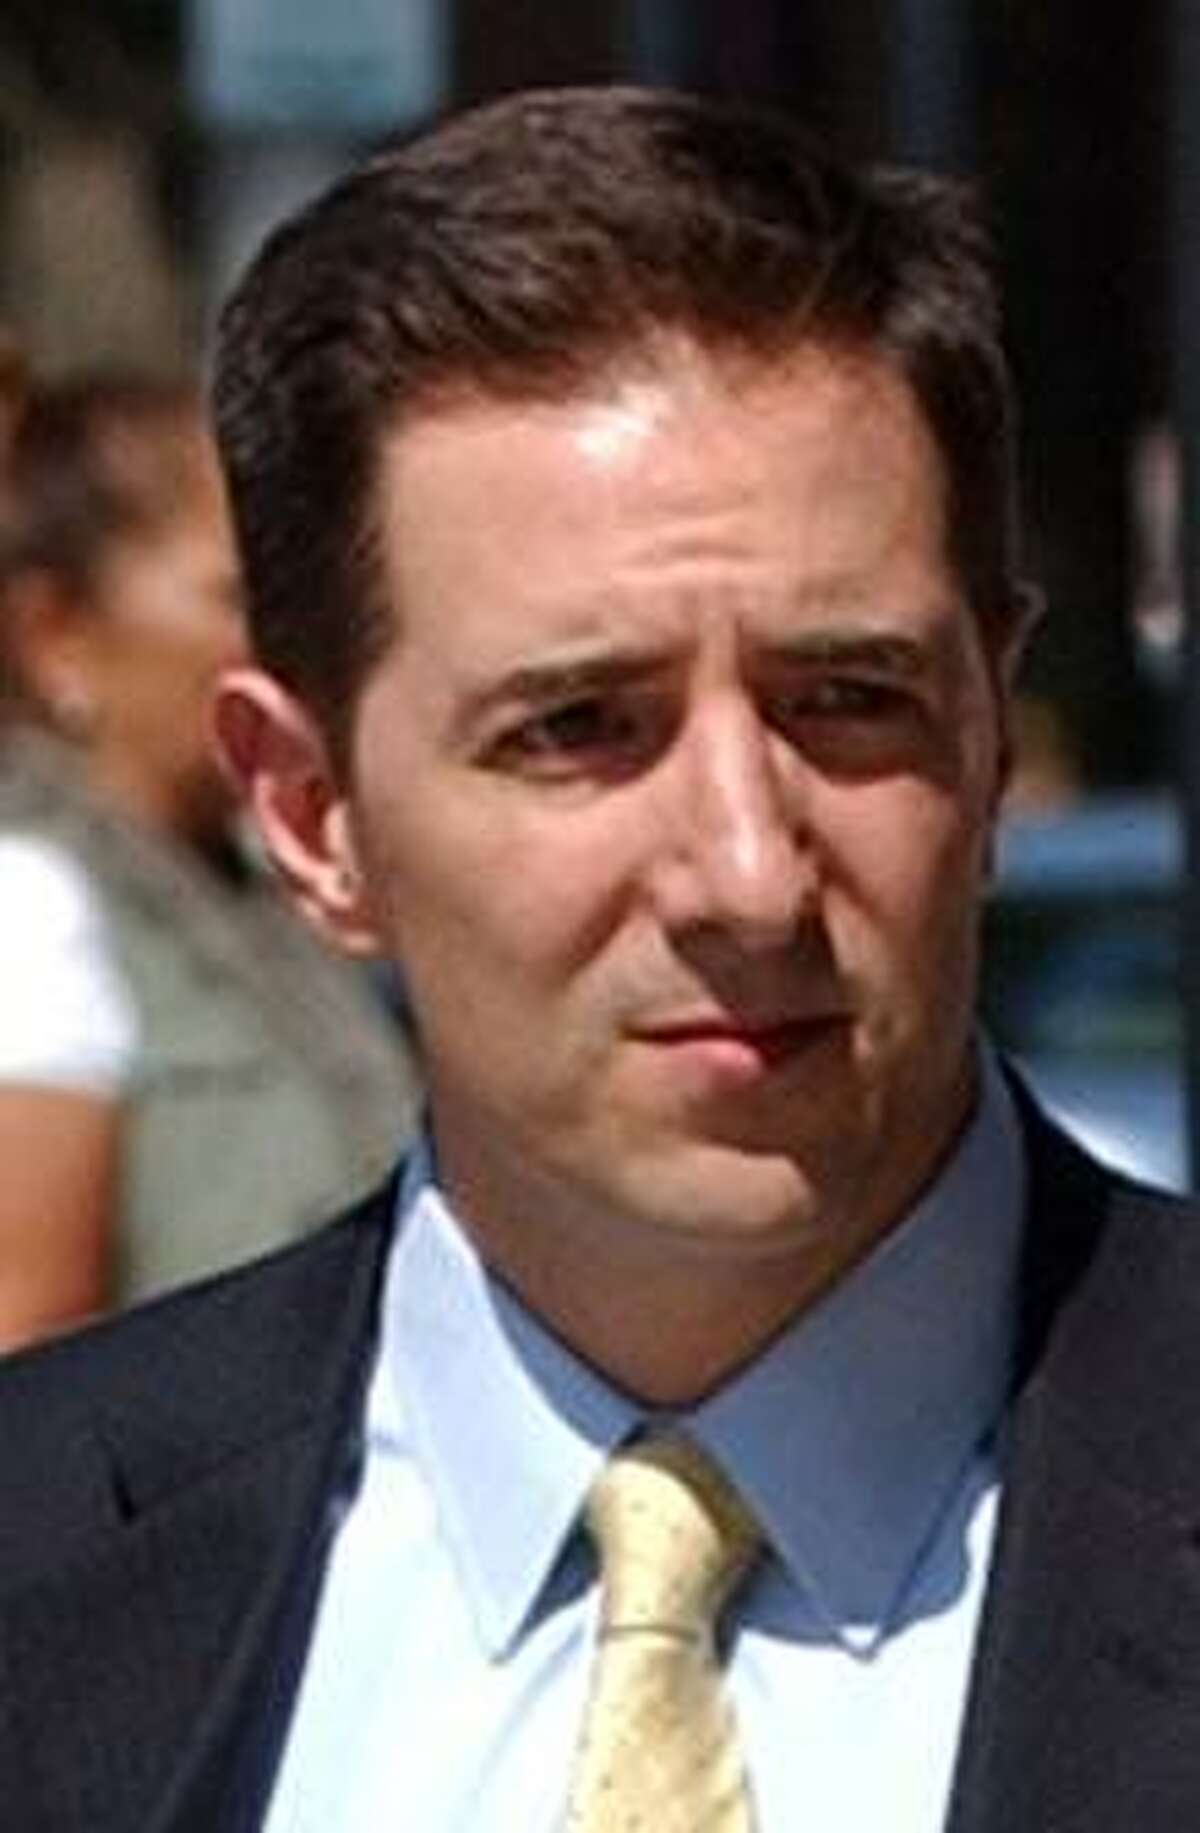 Chris Mattei, Democrat